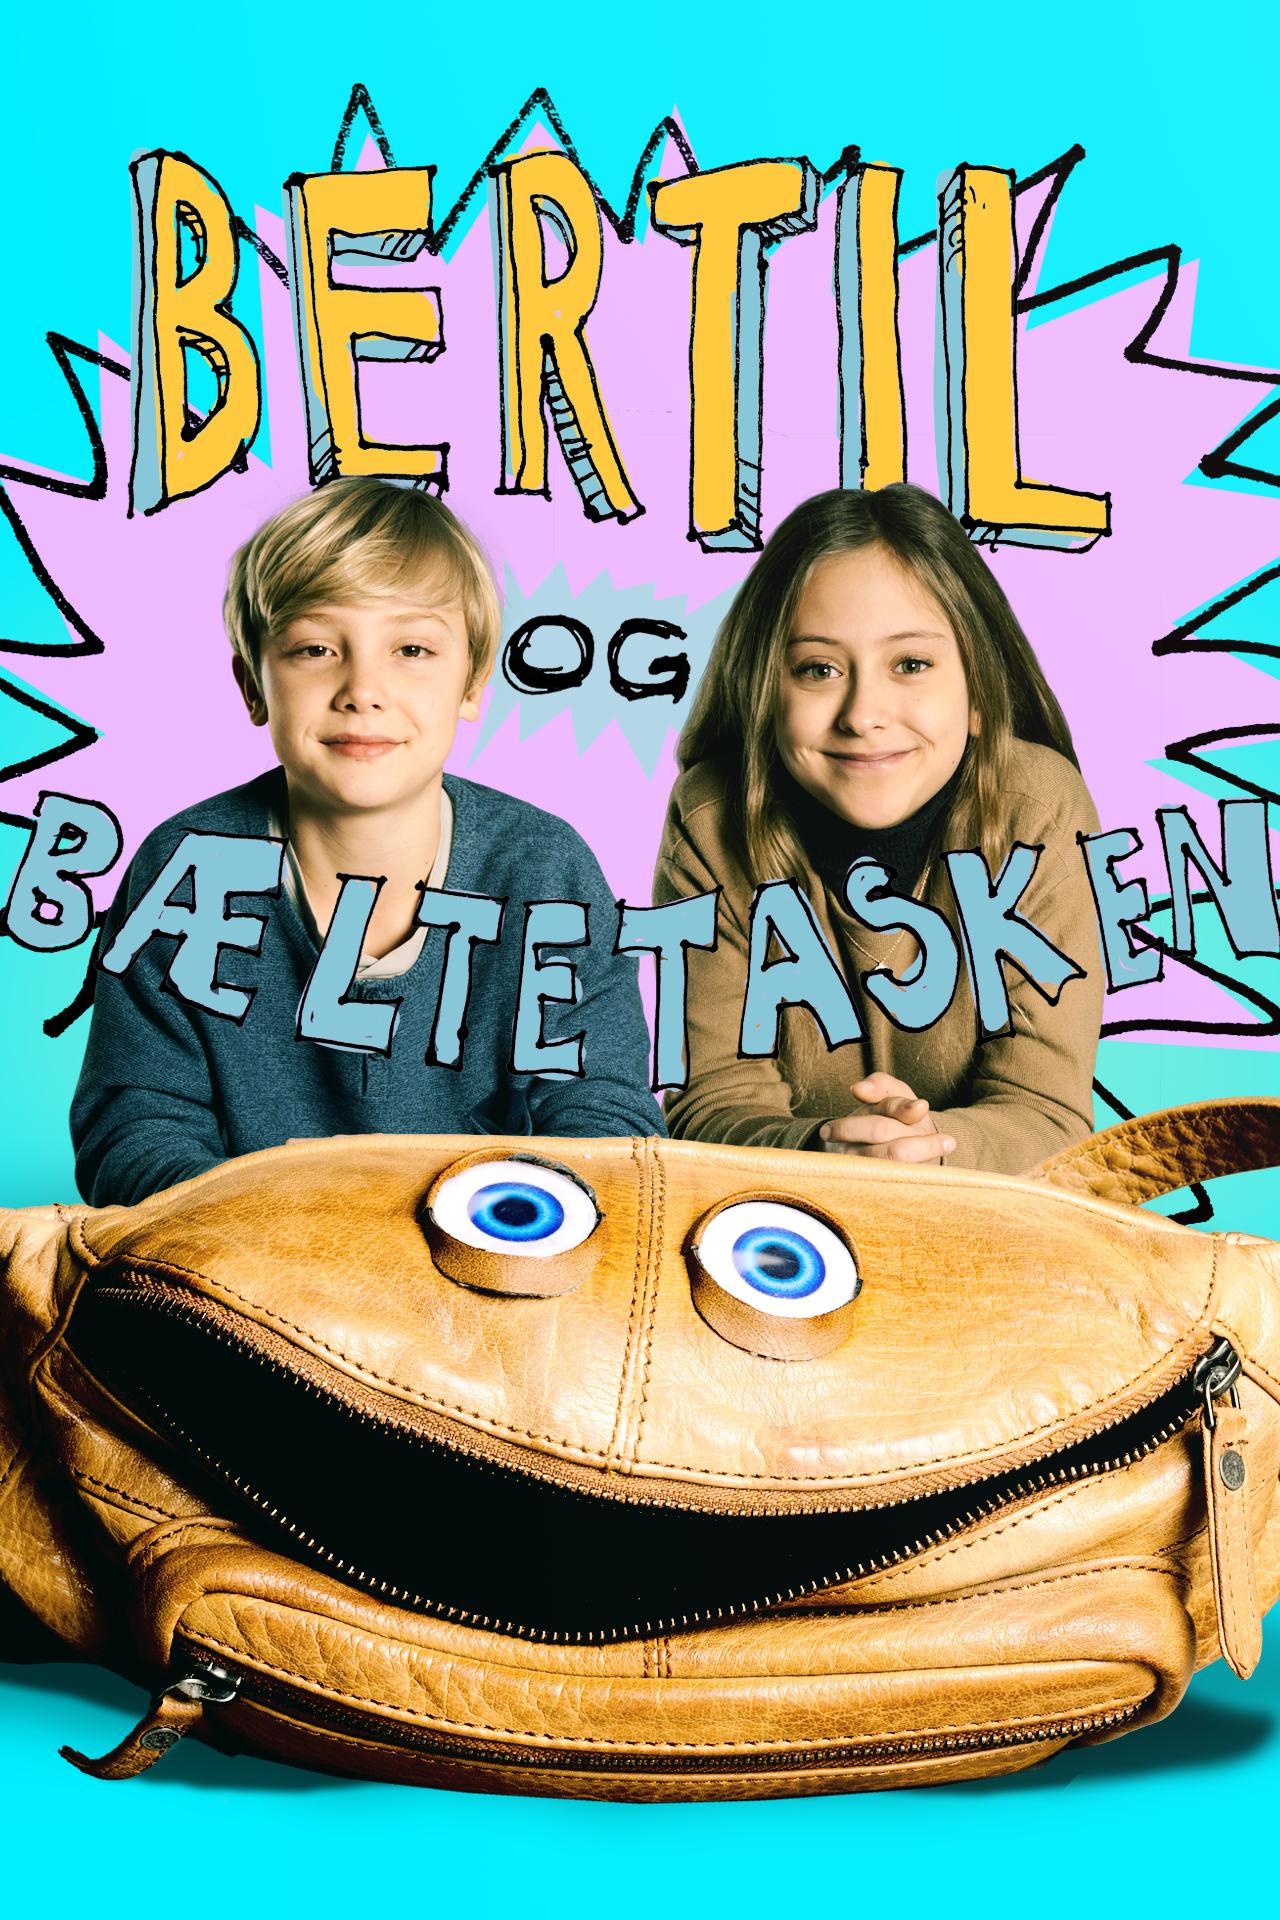 Bertil & Bæltetasken (2020) постер